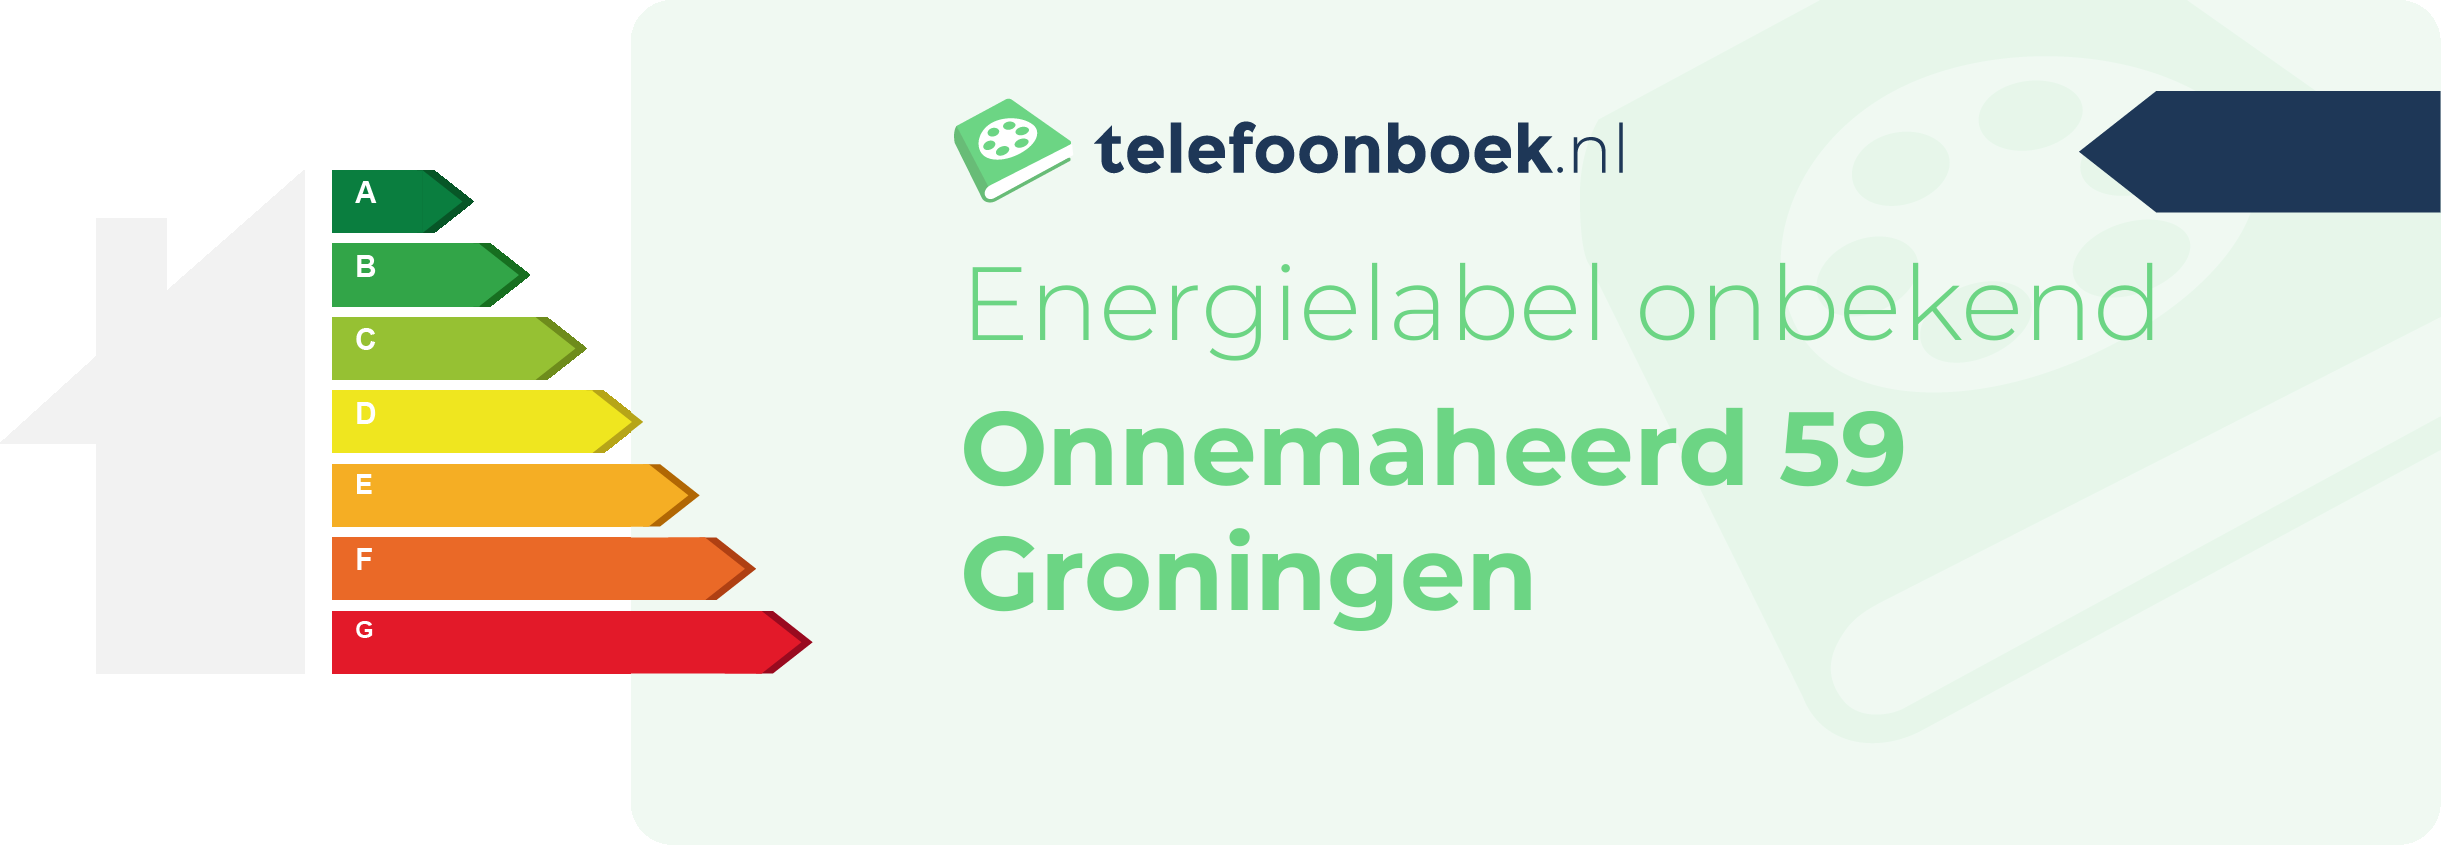 Energielabel Onnemaheerd 59 Groningen